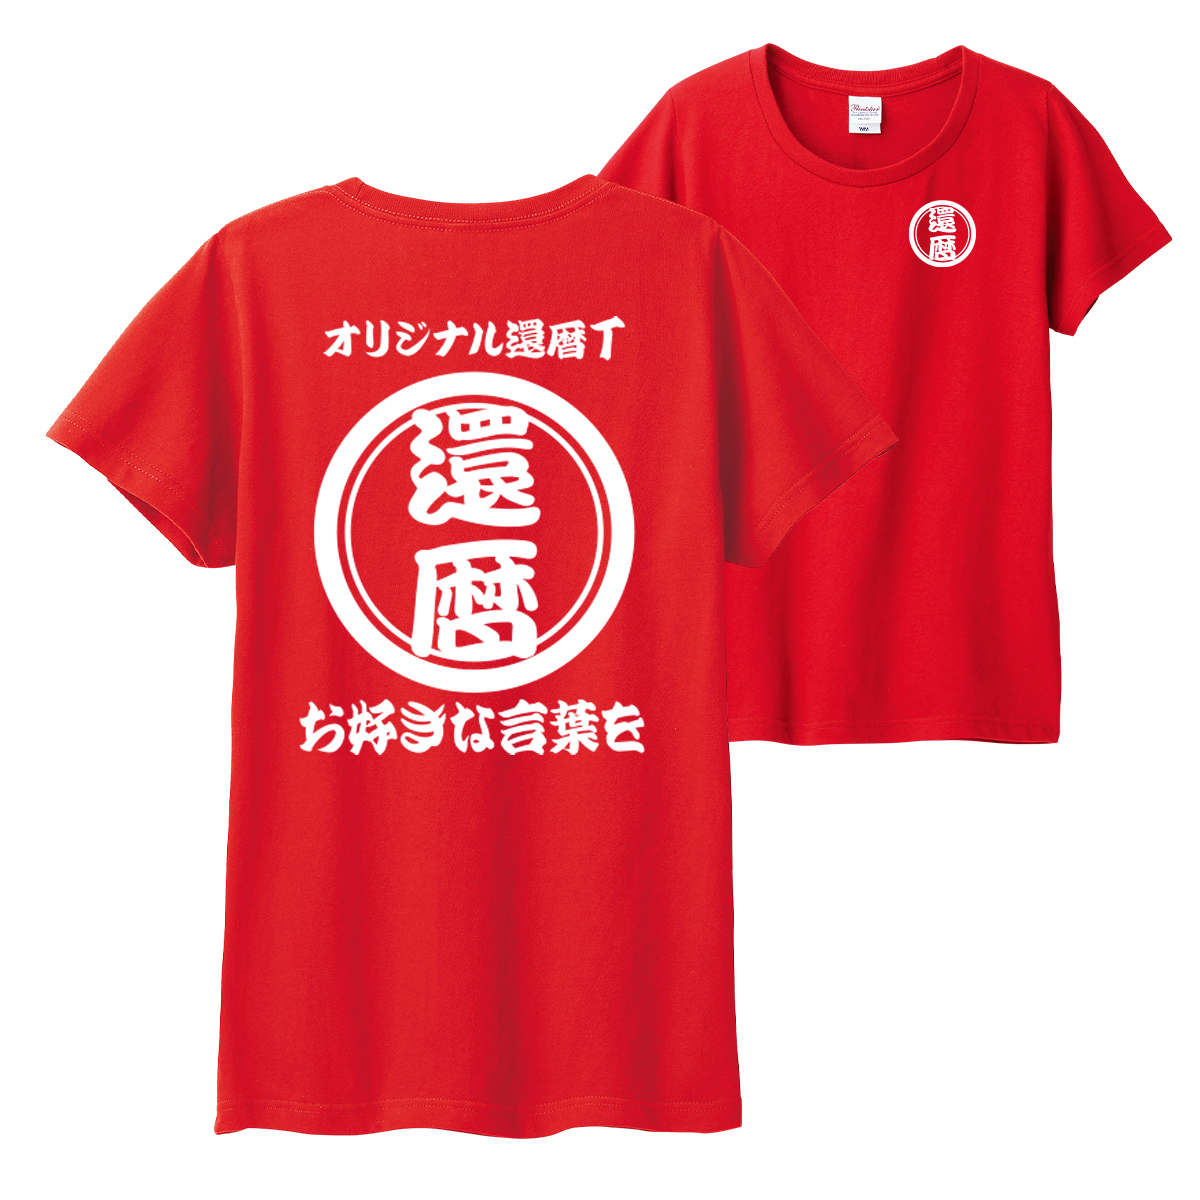 還暦 祝い プレゼント tシャツ メンズ レディース オリジナル 名入れ １枚から作成  赤い 半袖...